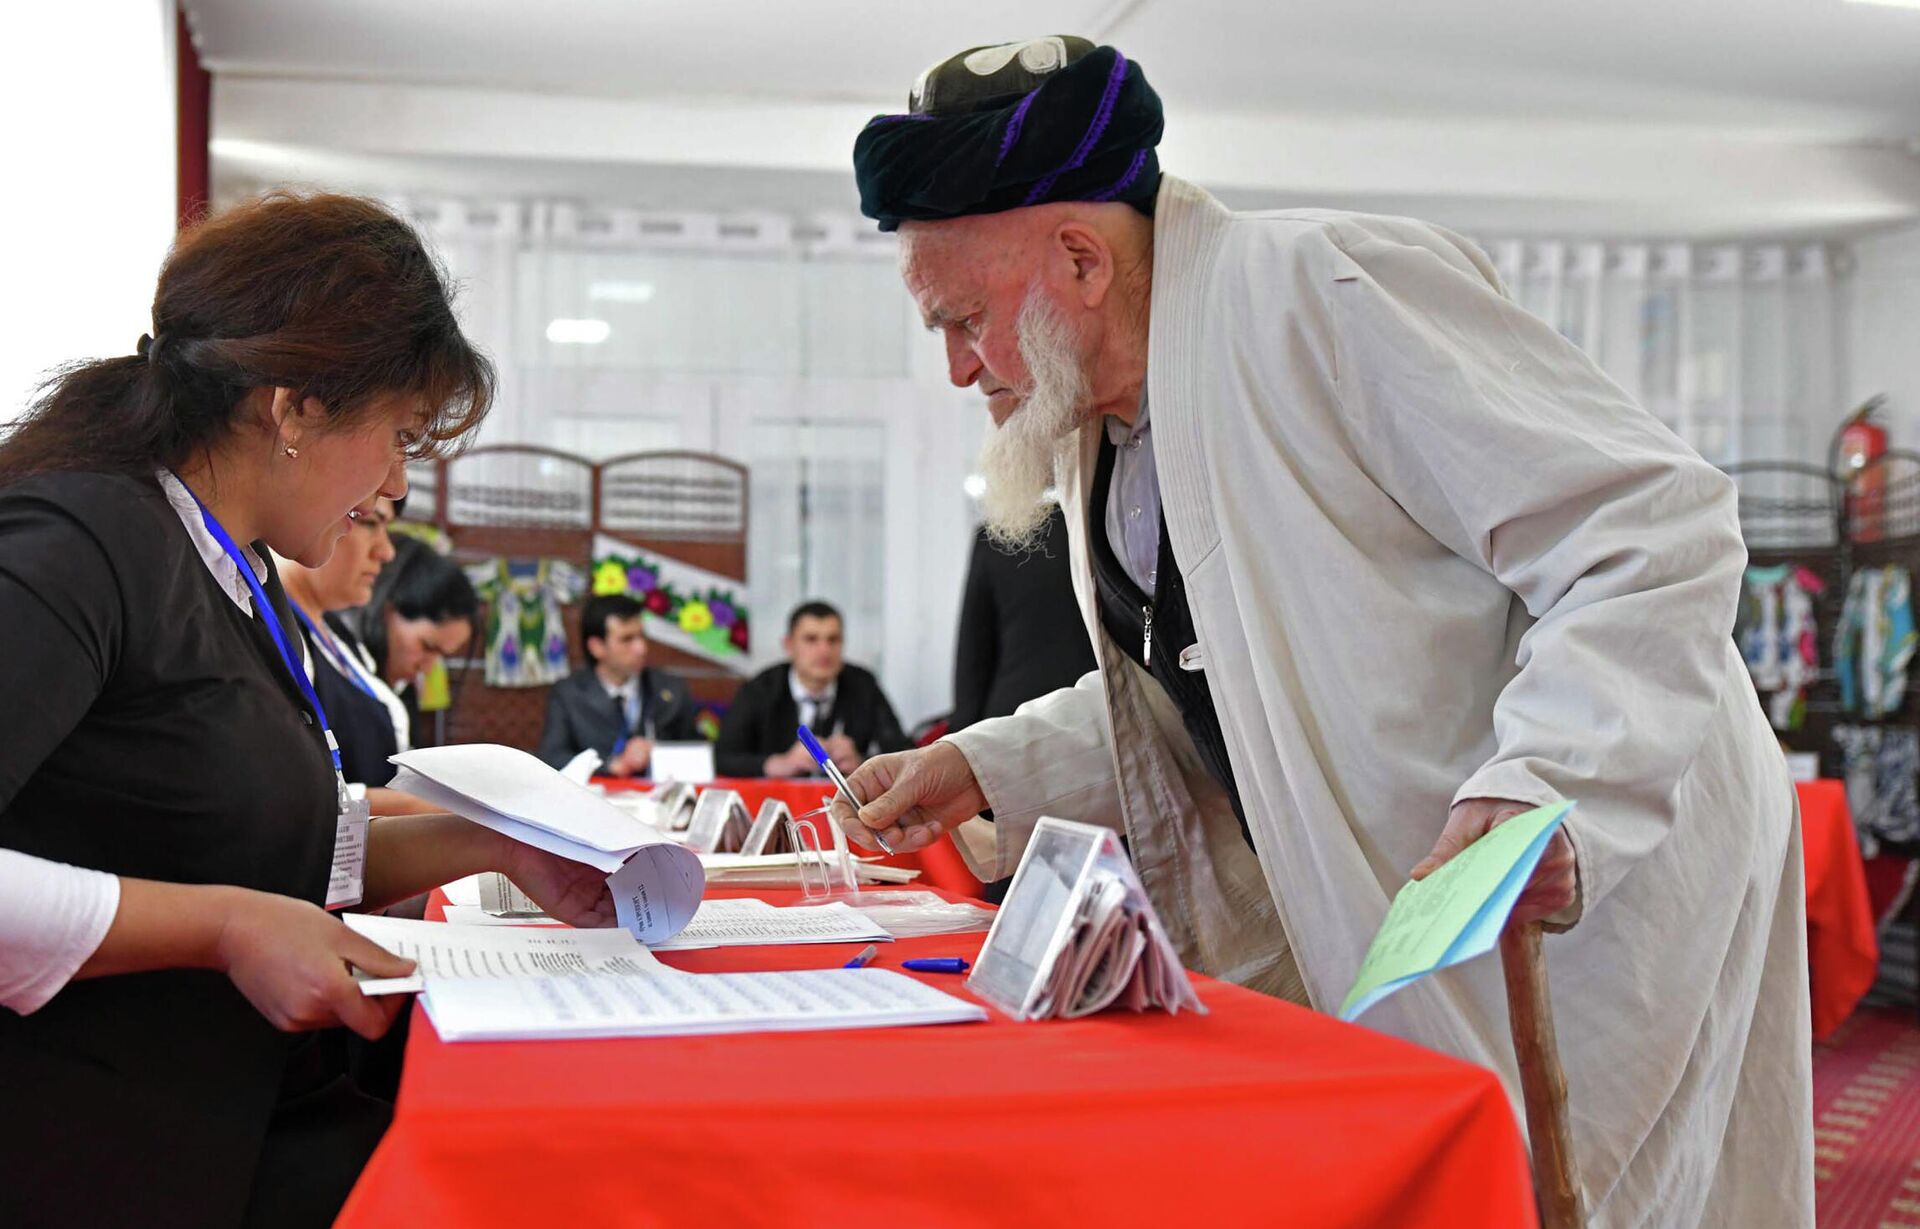 Житель Душанбе получает бюллетень на избирательном участке, чтобы проголосовать на выборах в нижнюю палату парламента Таджикистана - РИА Новости, 1920, 09.10.2020